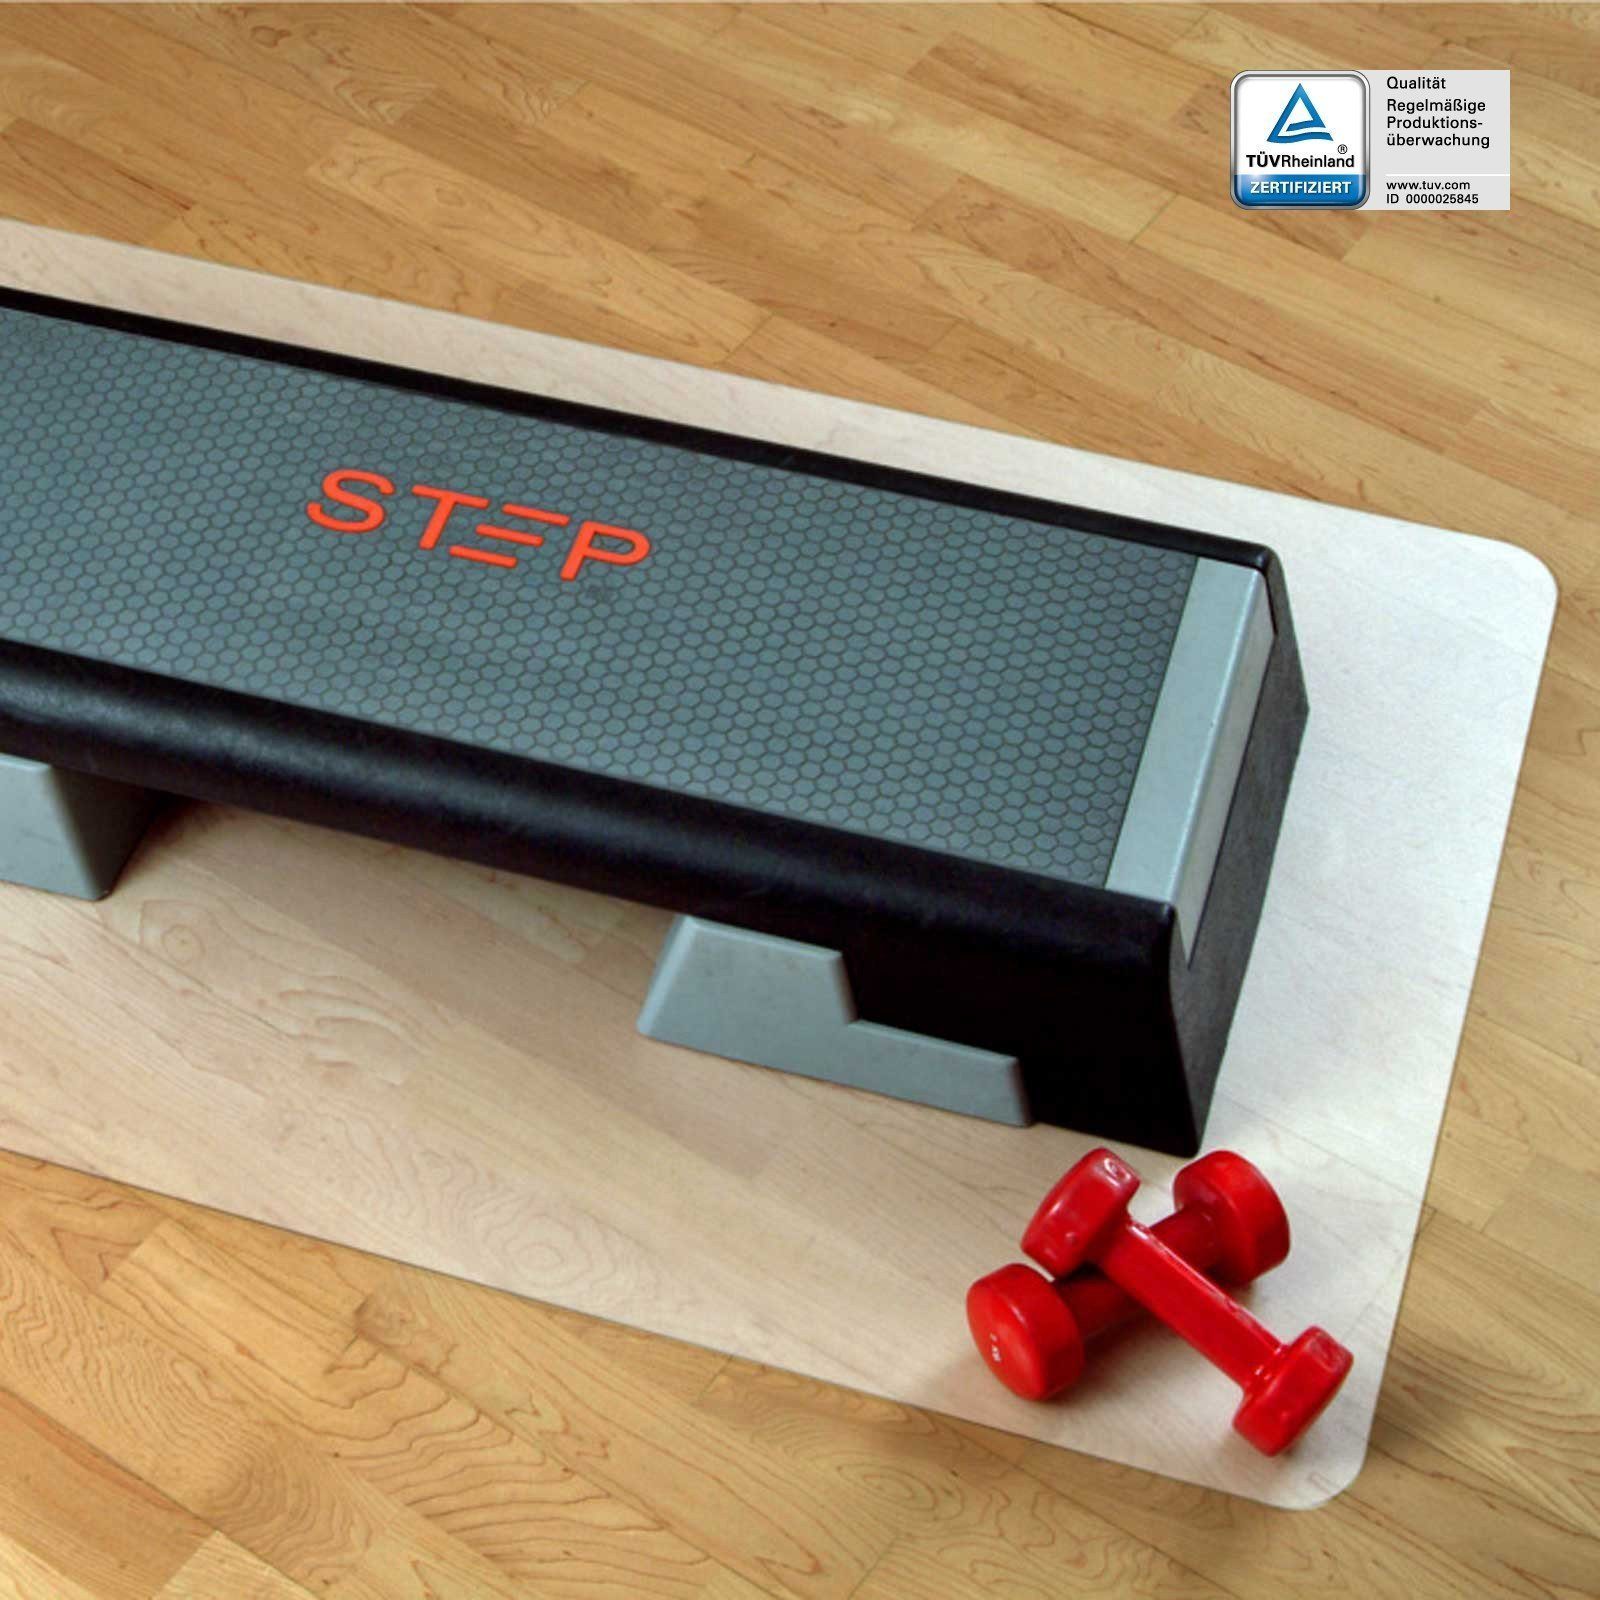 Karat Bodenmatte Unterlegmatte für Fitnessgeräte, Bodenschutz, rechteckig, halbtransparent